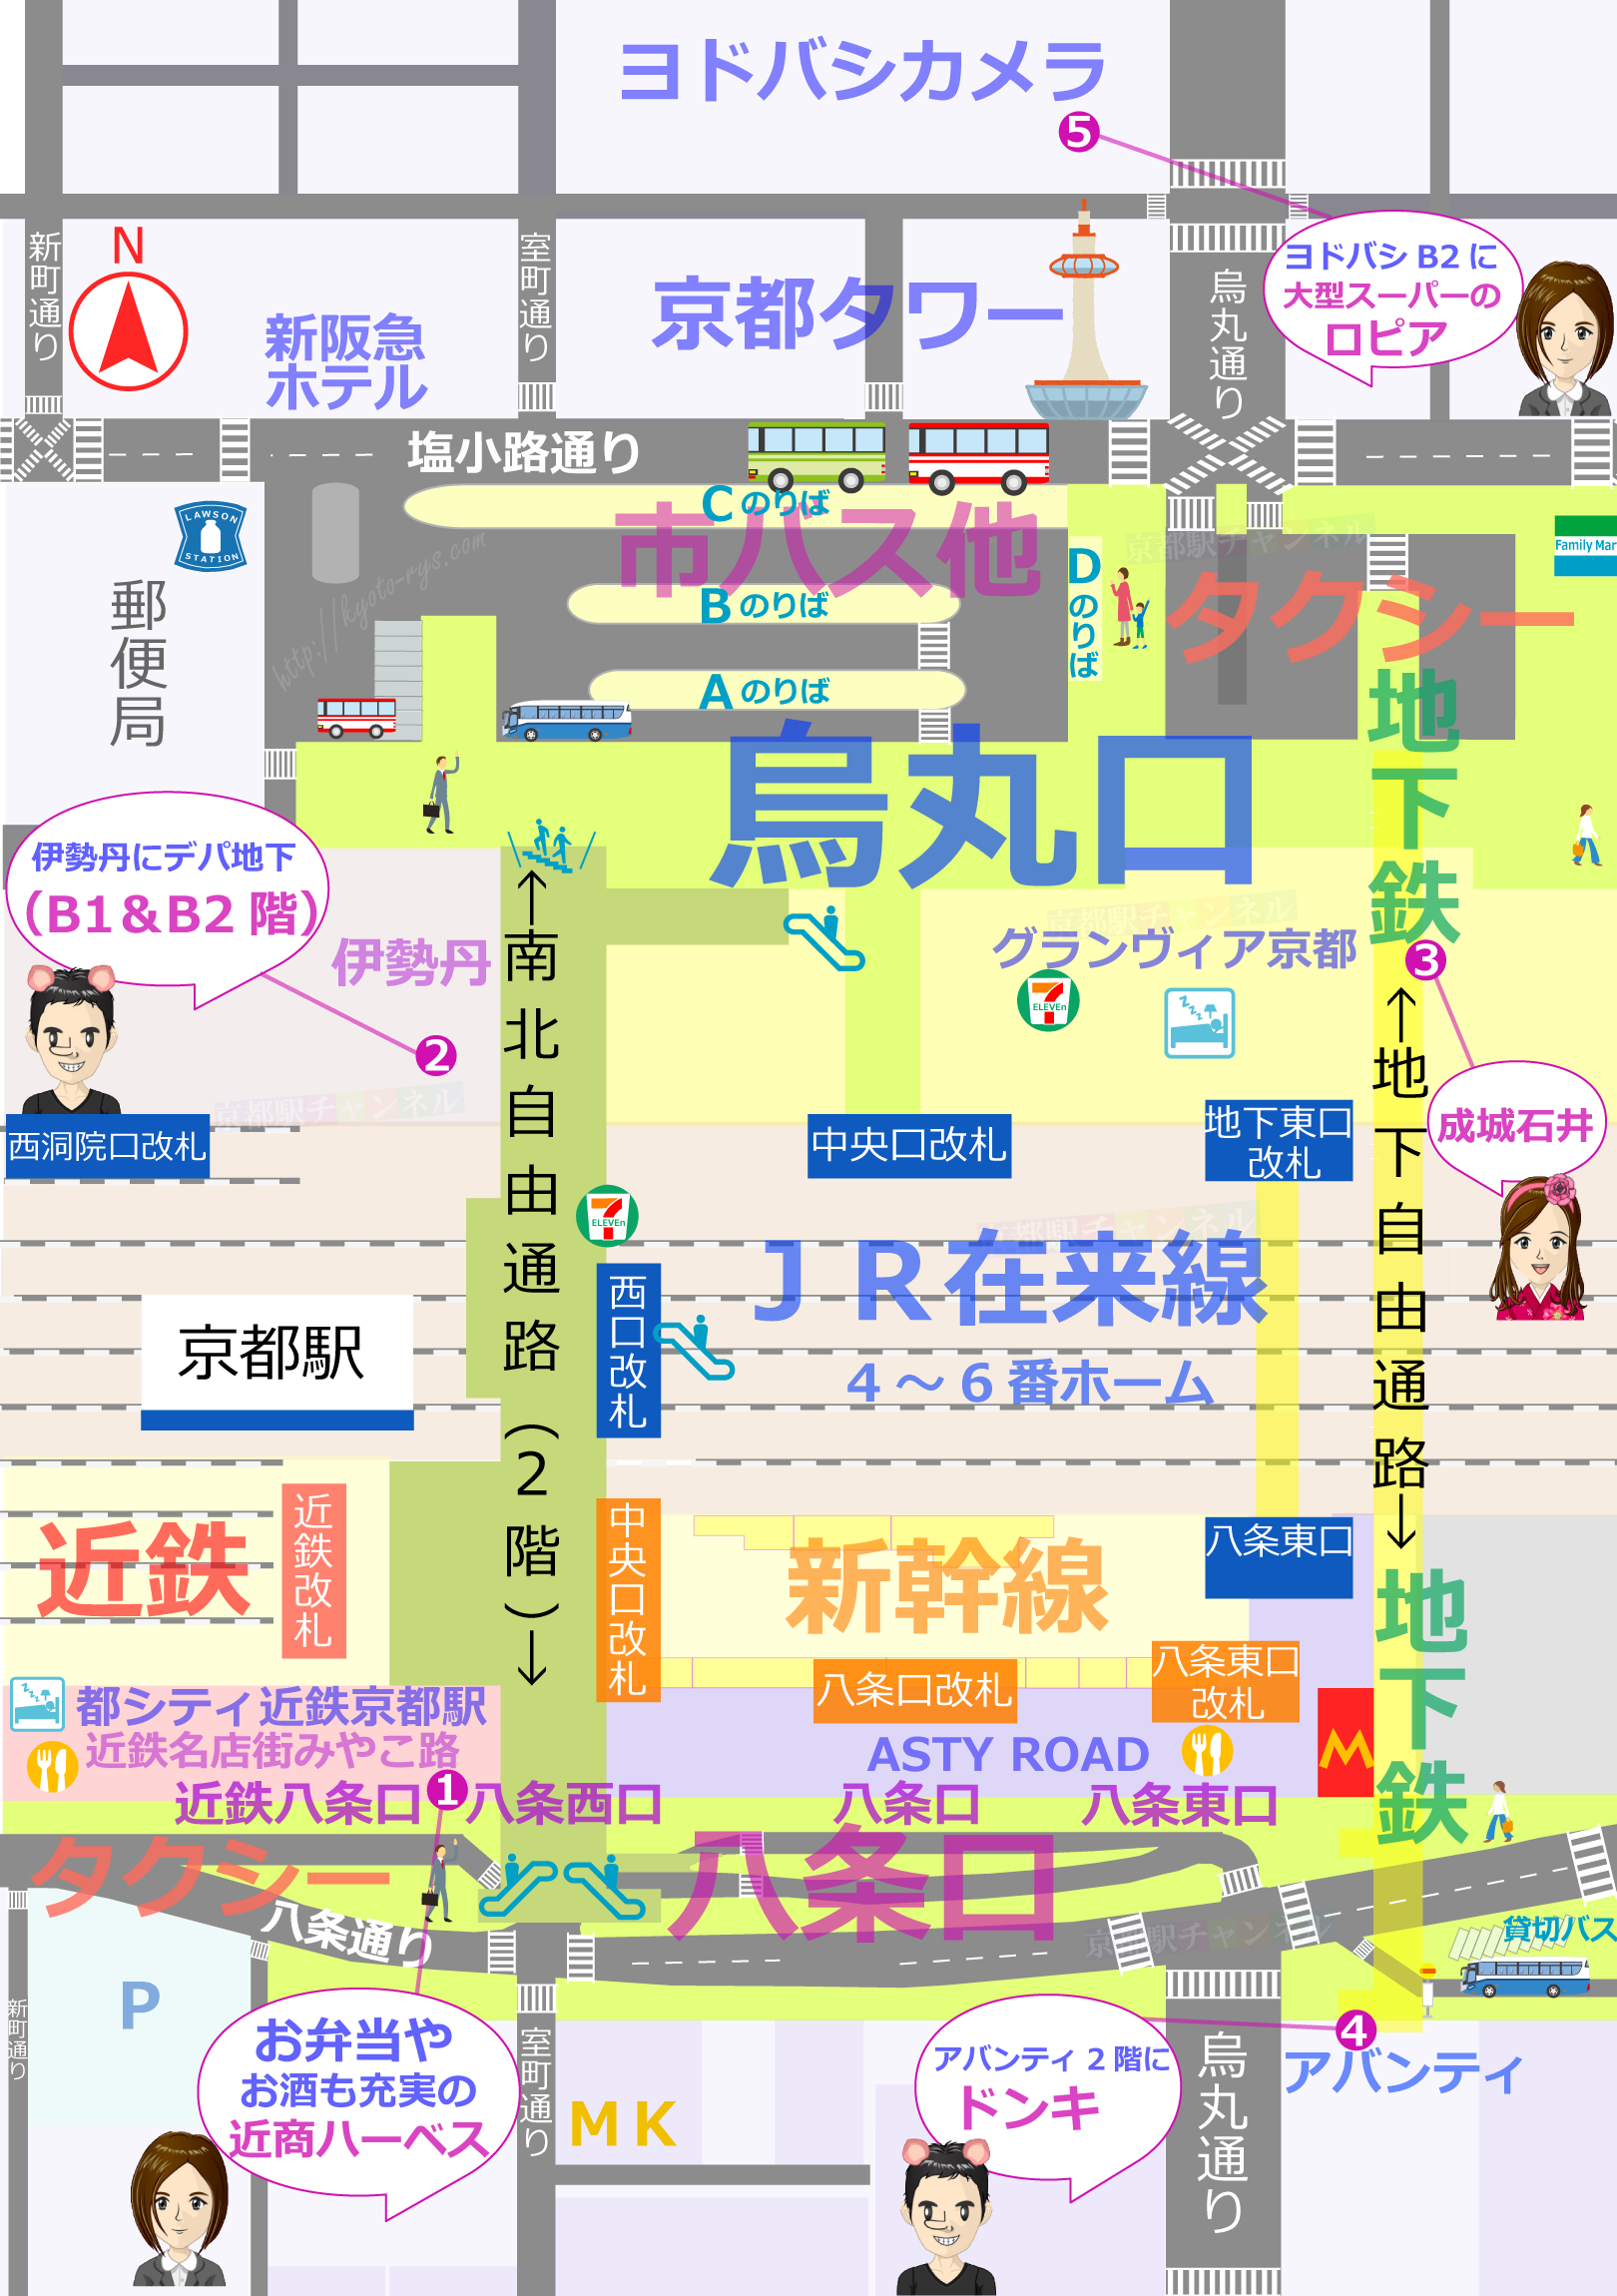 京都駅全体のスーパーの地図